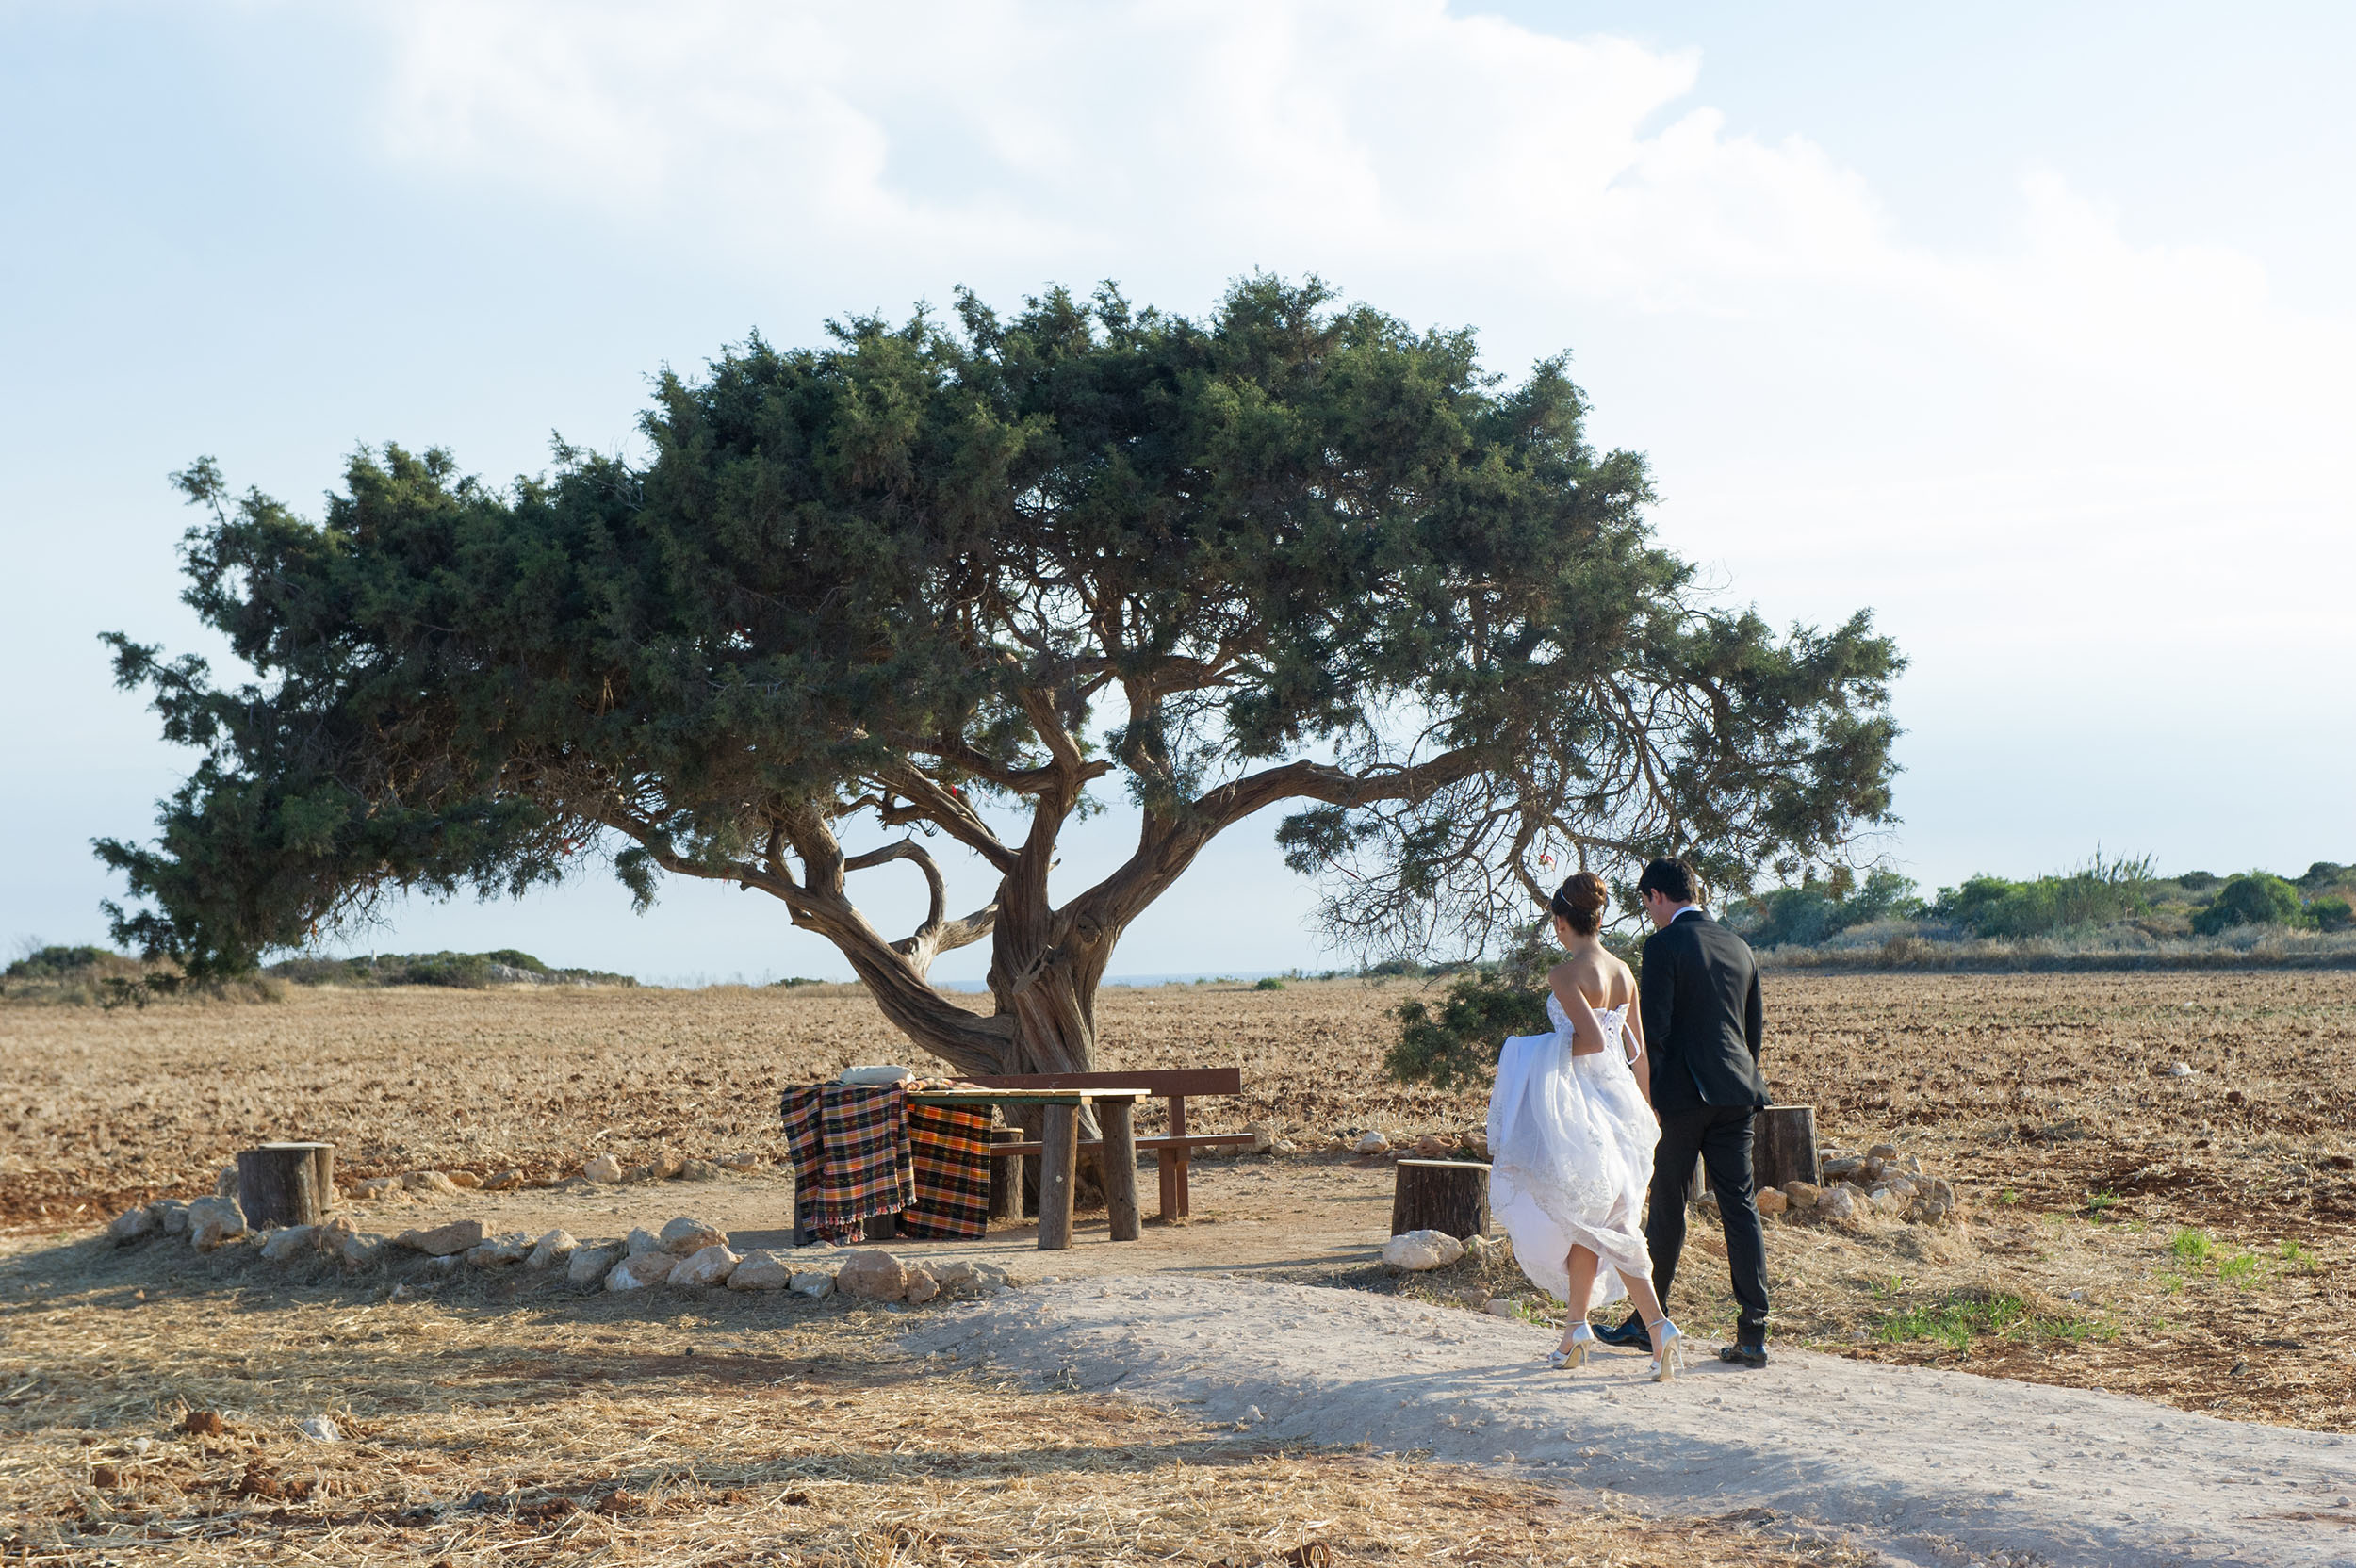 Book your wedding day in Venue Aoratos (Juniper Tree)